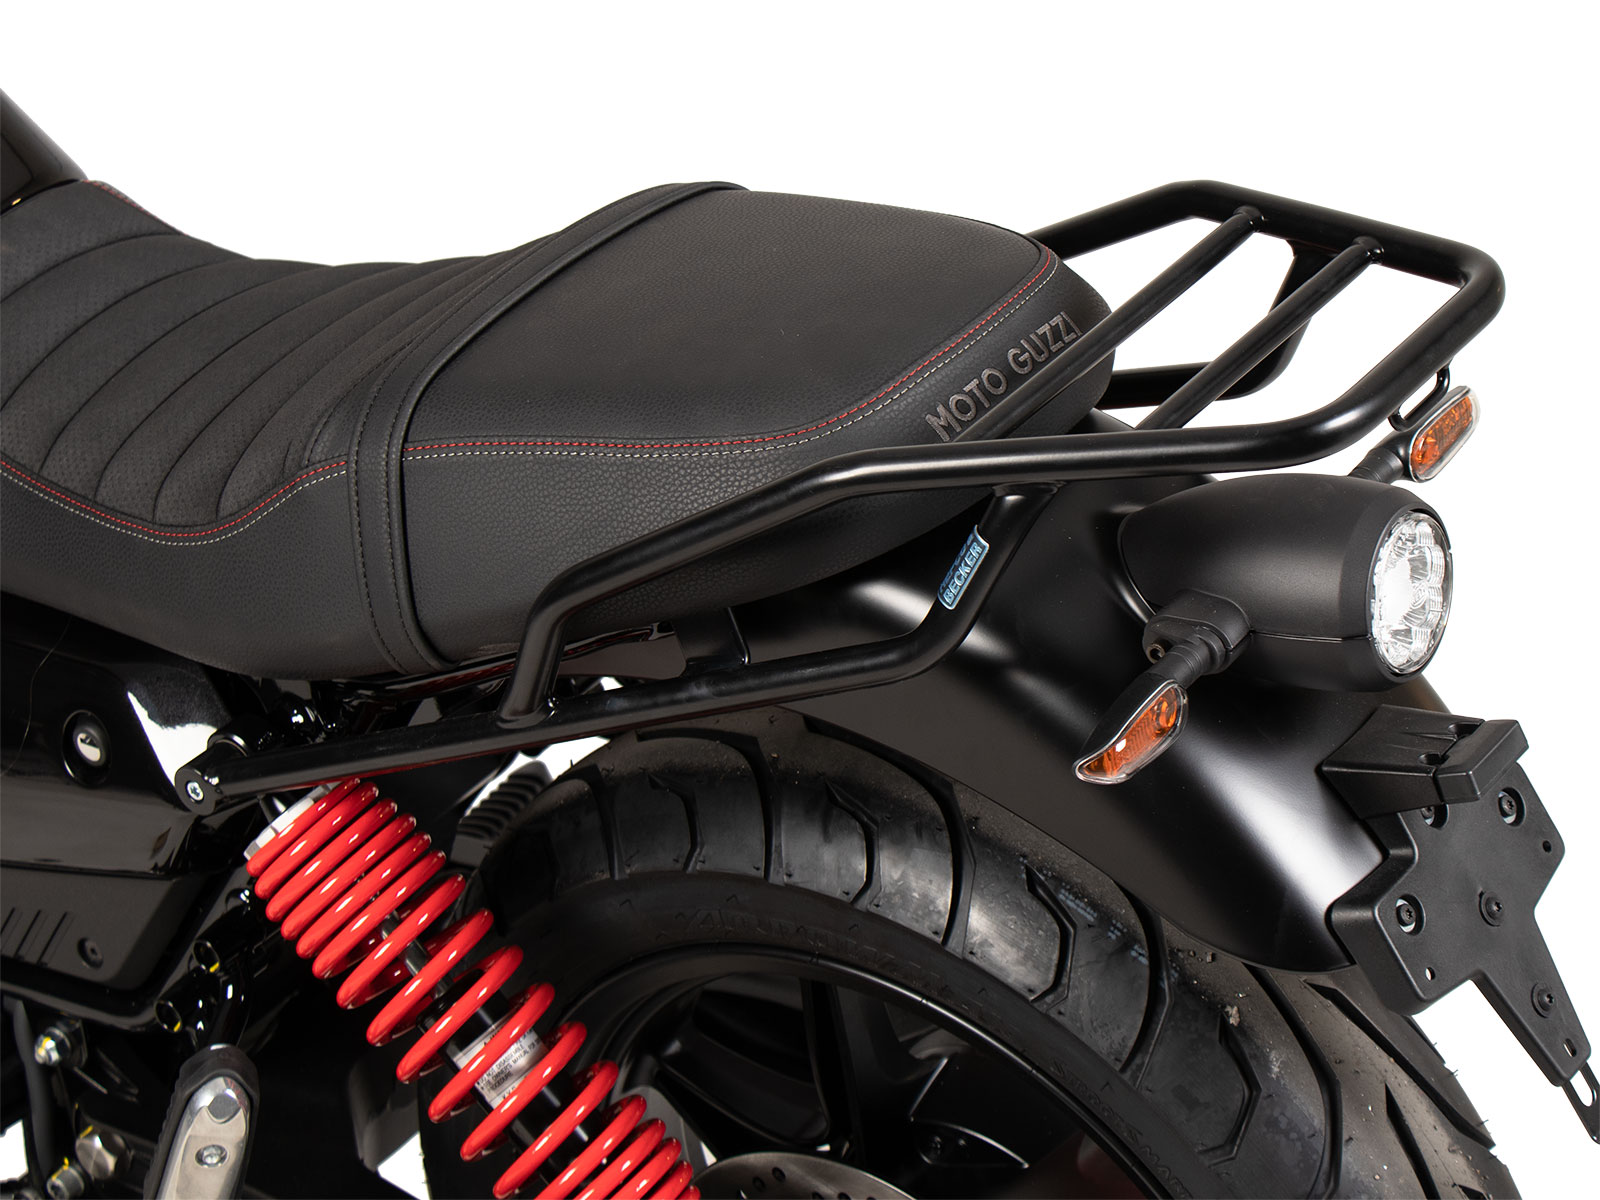 Porte-bagages tubulaire acier pour votre moto